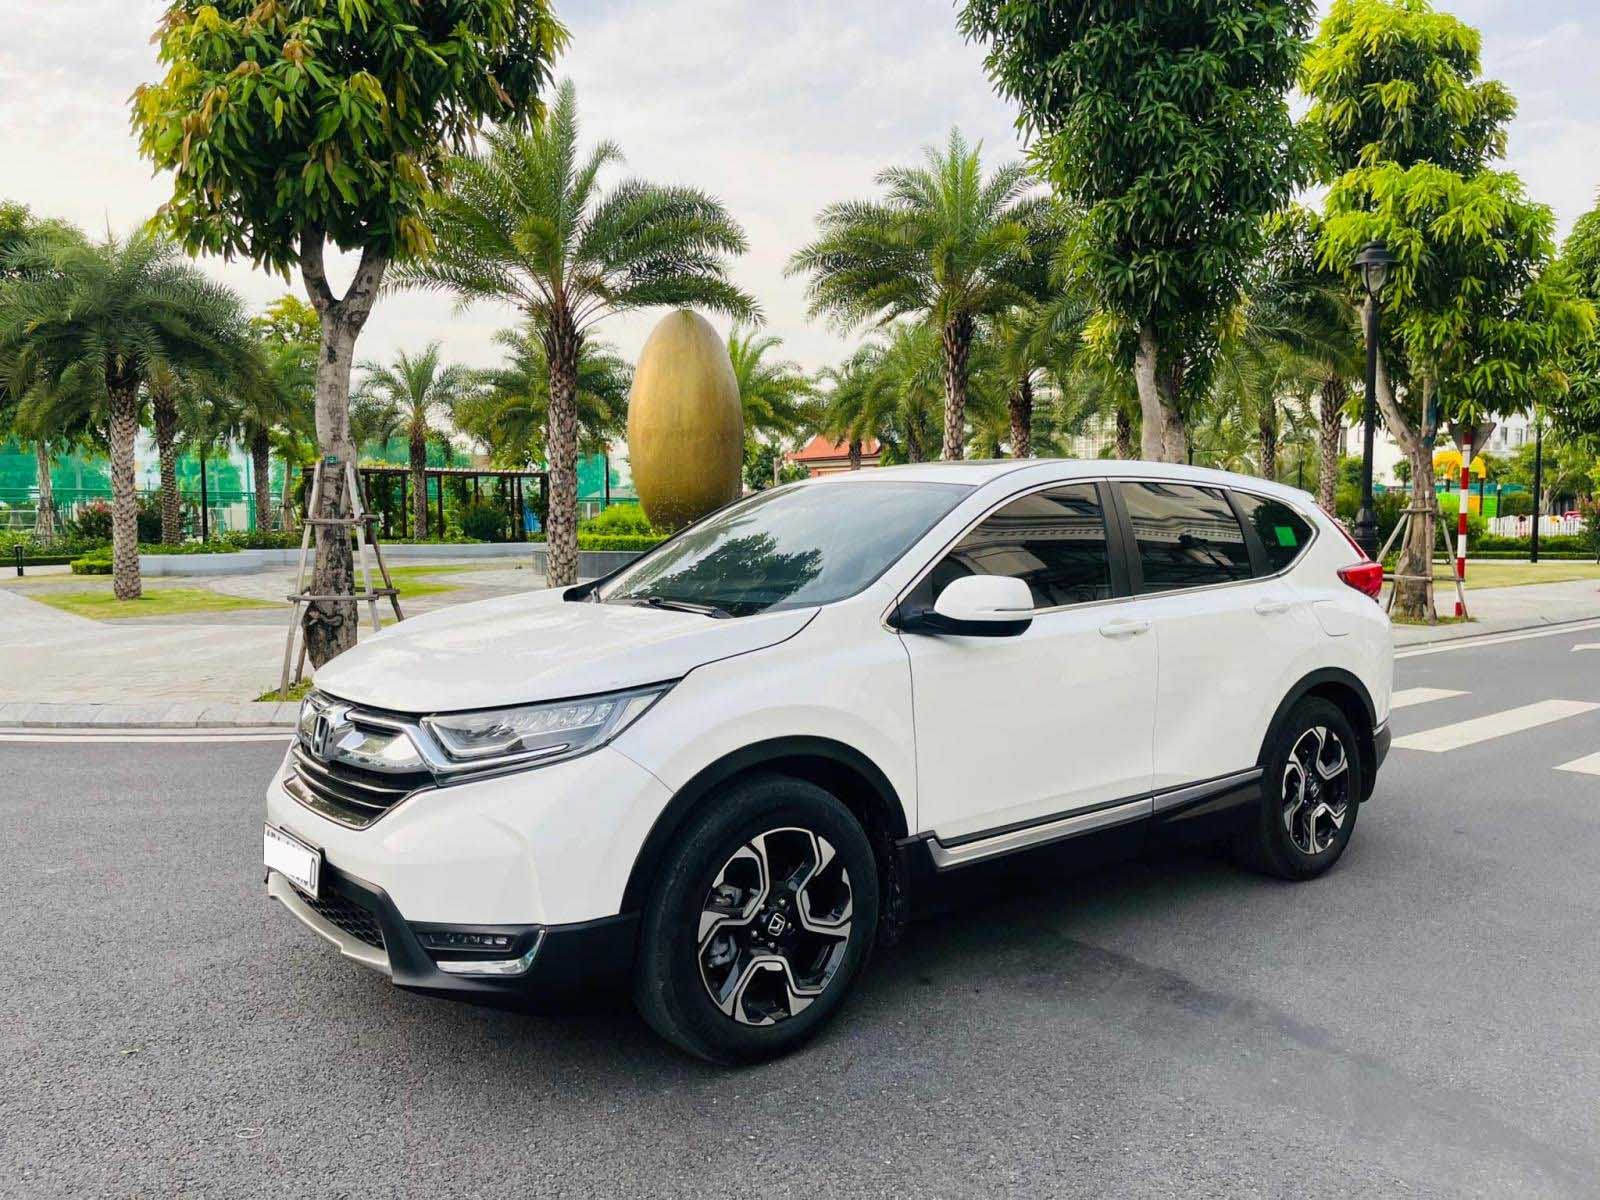 Bán ô tô Honda CRV L 2018 Xe cũ Nhập khẩu Số tự động tại Hà Nội Xe cũ Số tự  động tại Hà Nội  otoxehoicom  Mua bán Ô tô